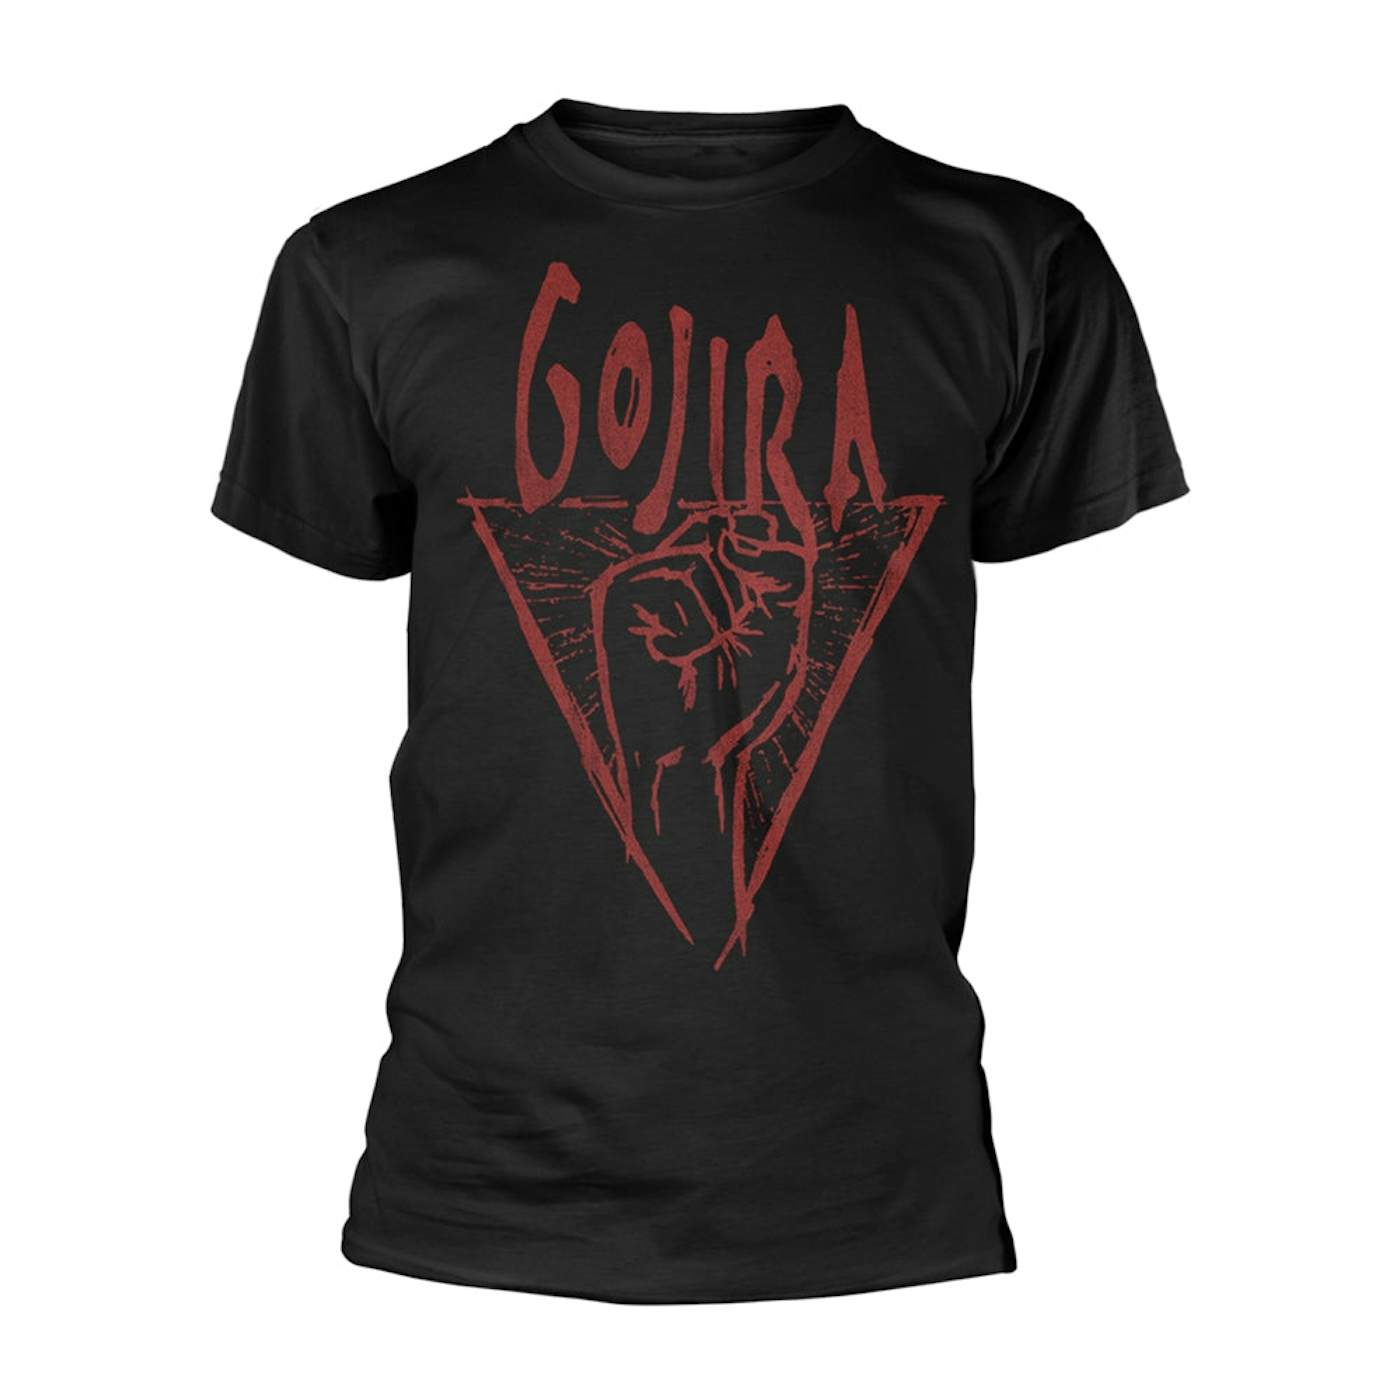 Gojira T Shirt - Power Glove (Organic)